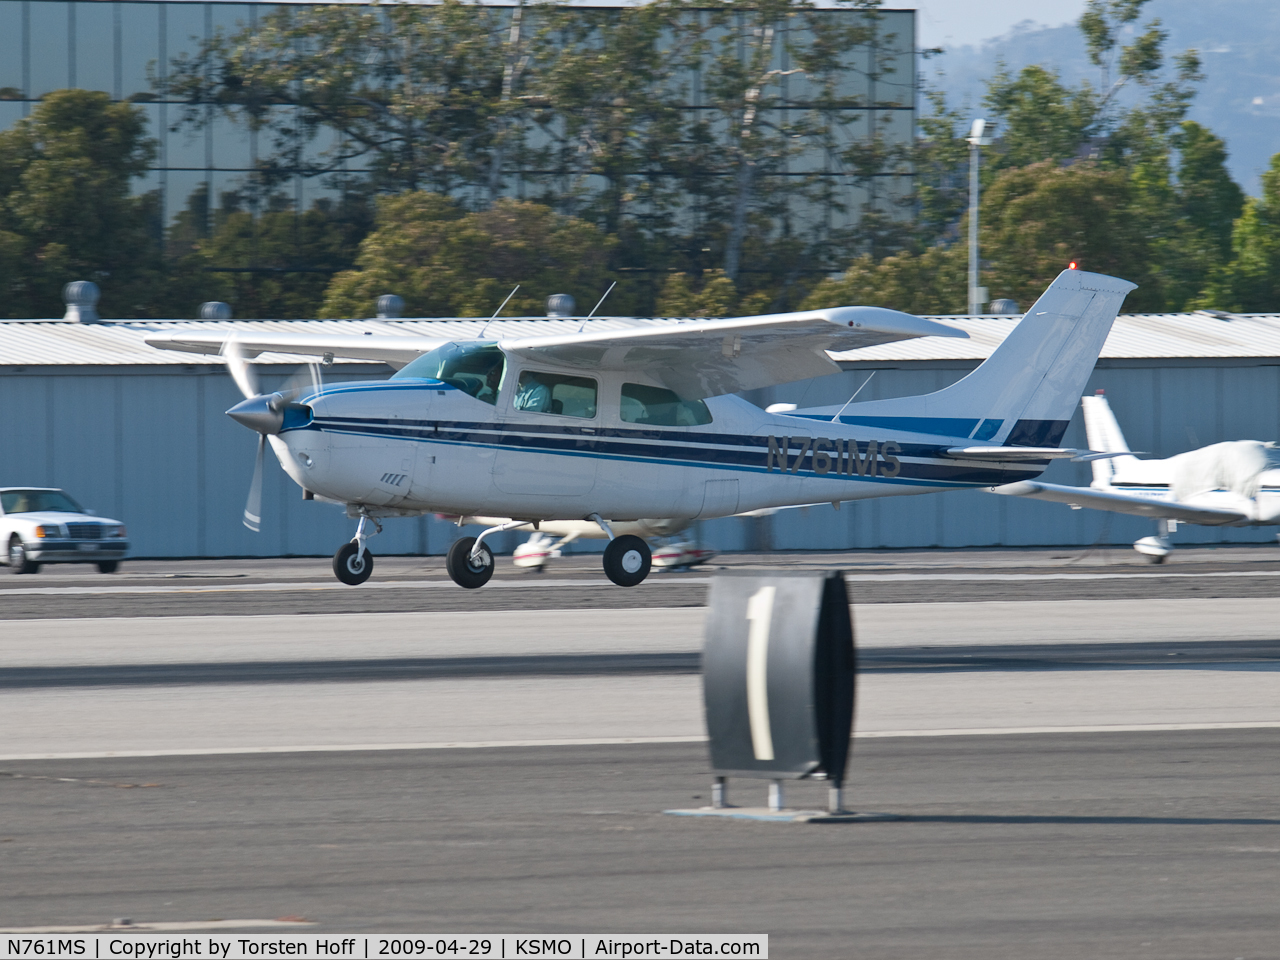 N761MS, 1977 Cessna T210M Turbo Centurion C/N 21062369, N761MS arriving on RWY 21